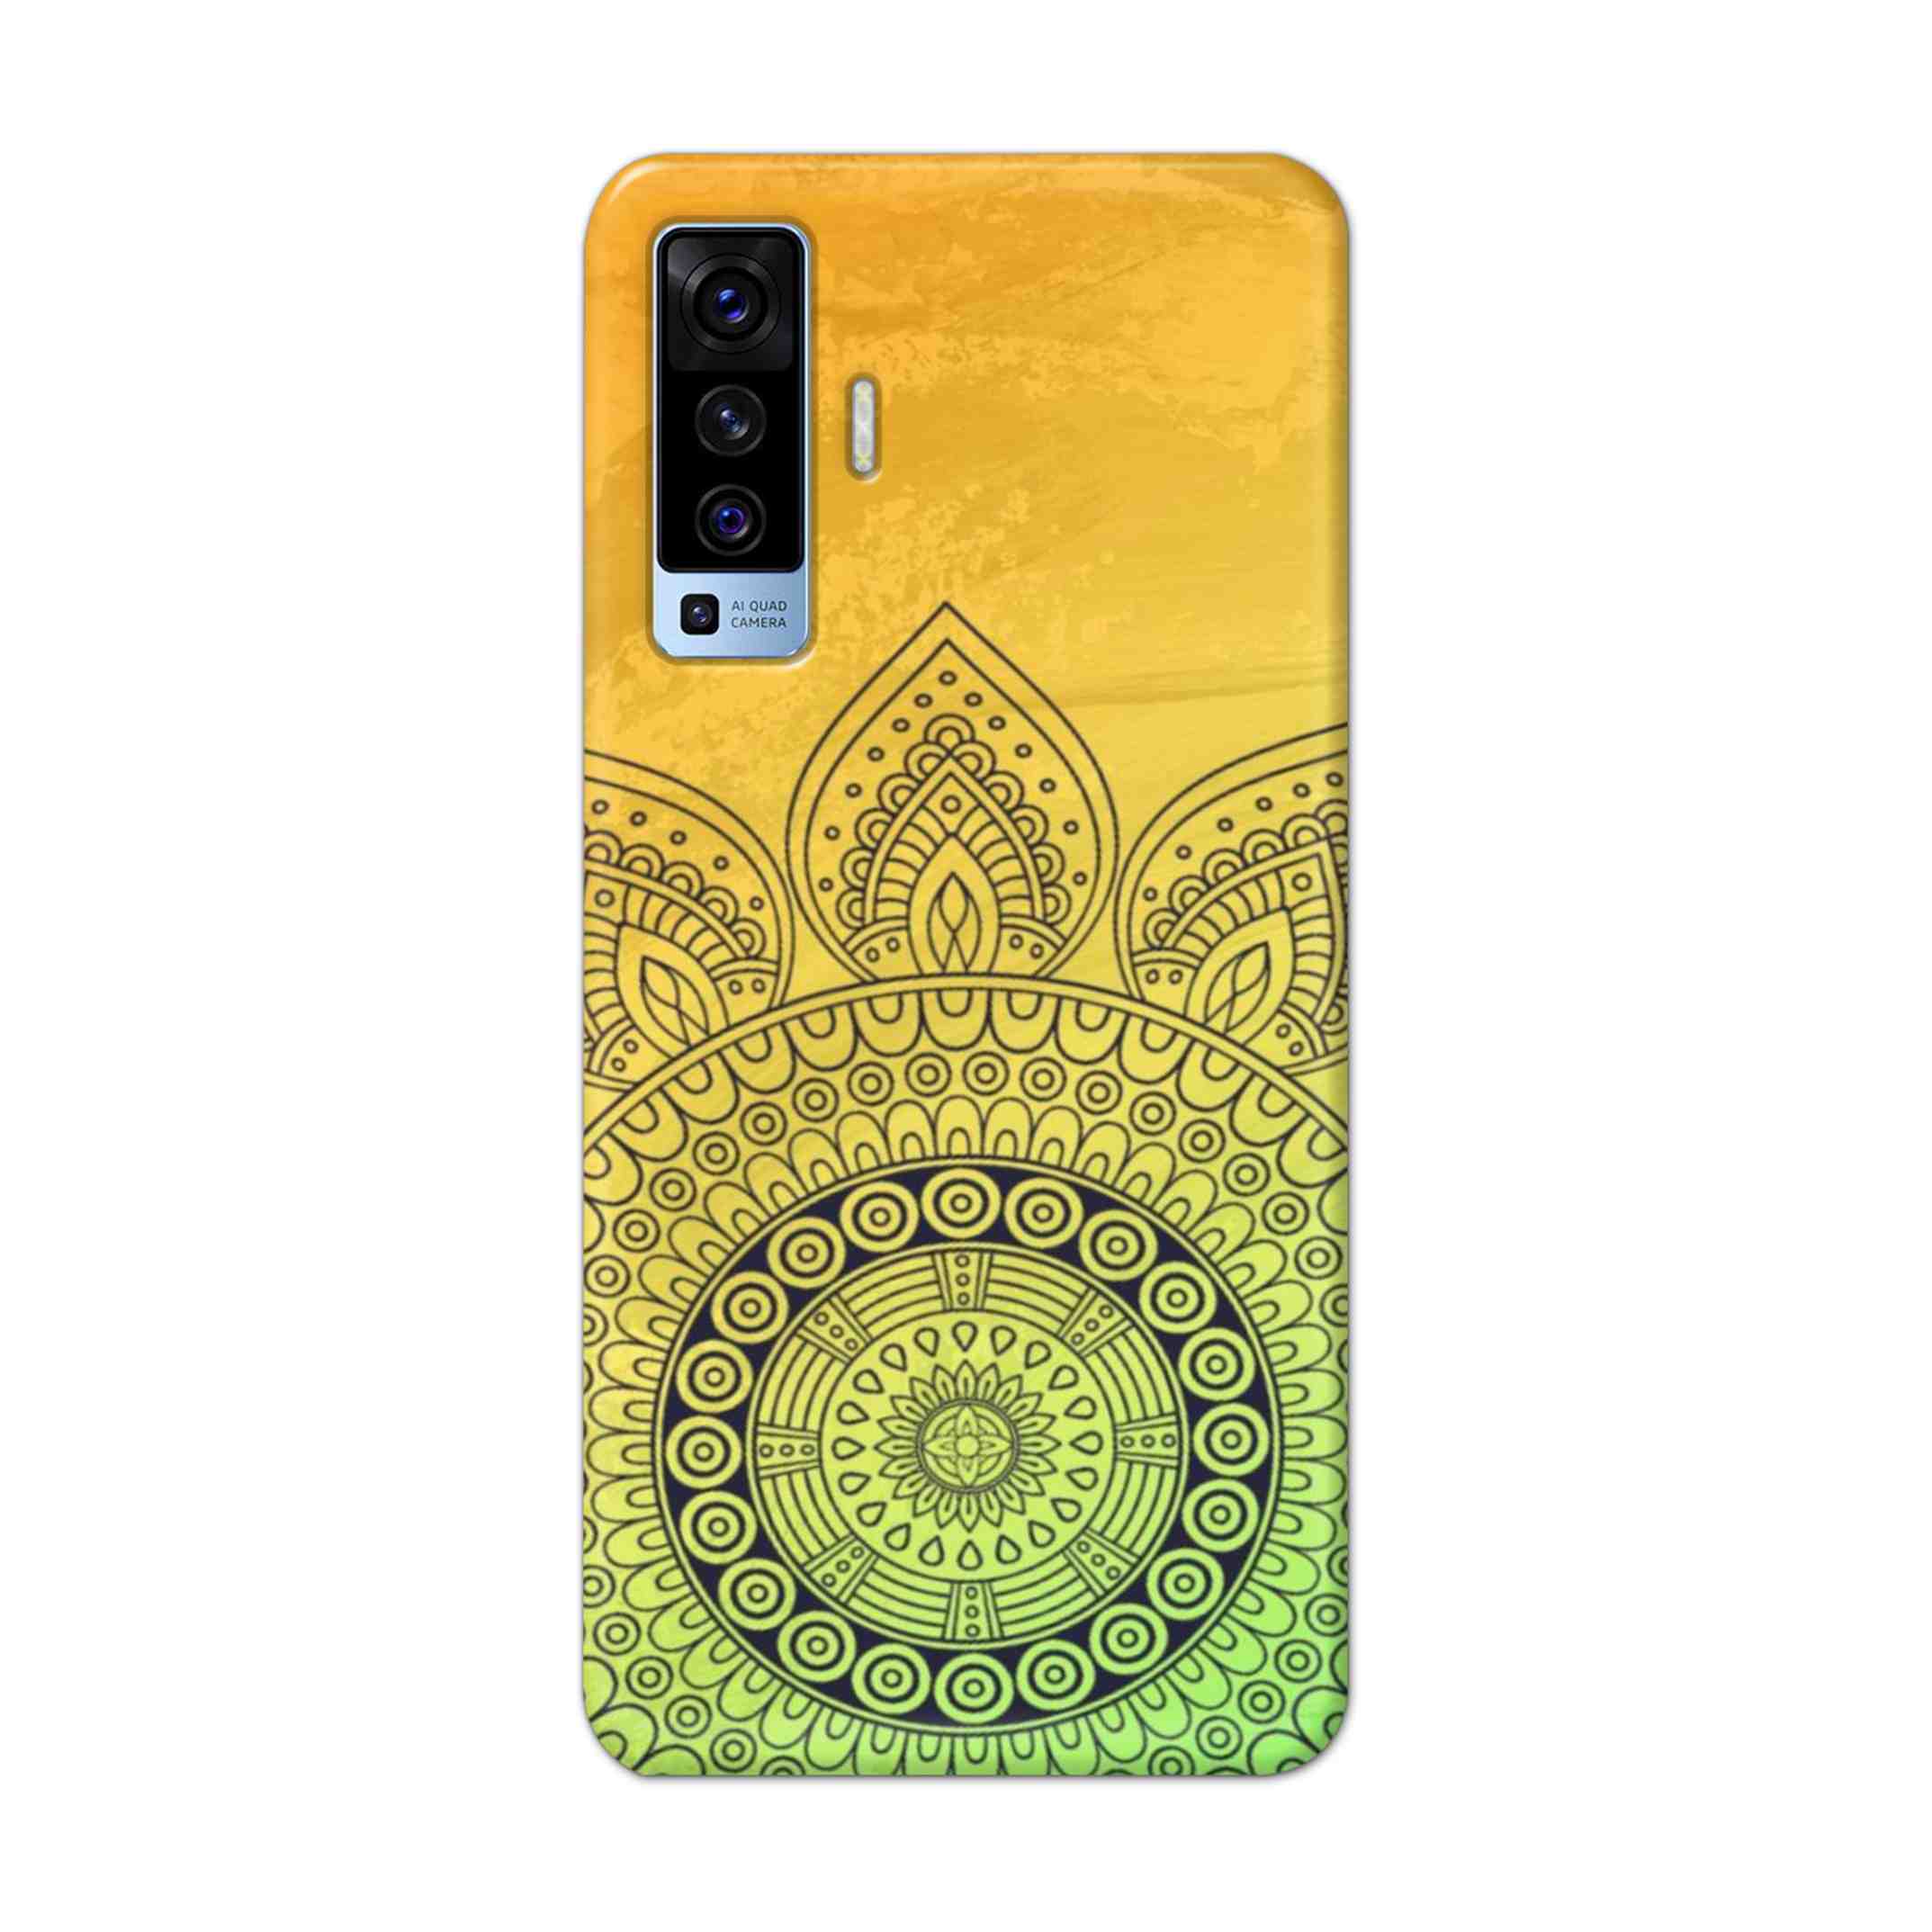 Buy Yellow Rangoli Hard Back Mobile Phone Case Cover For Vivo X50 Online